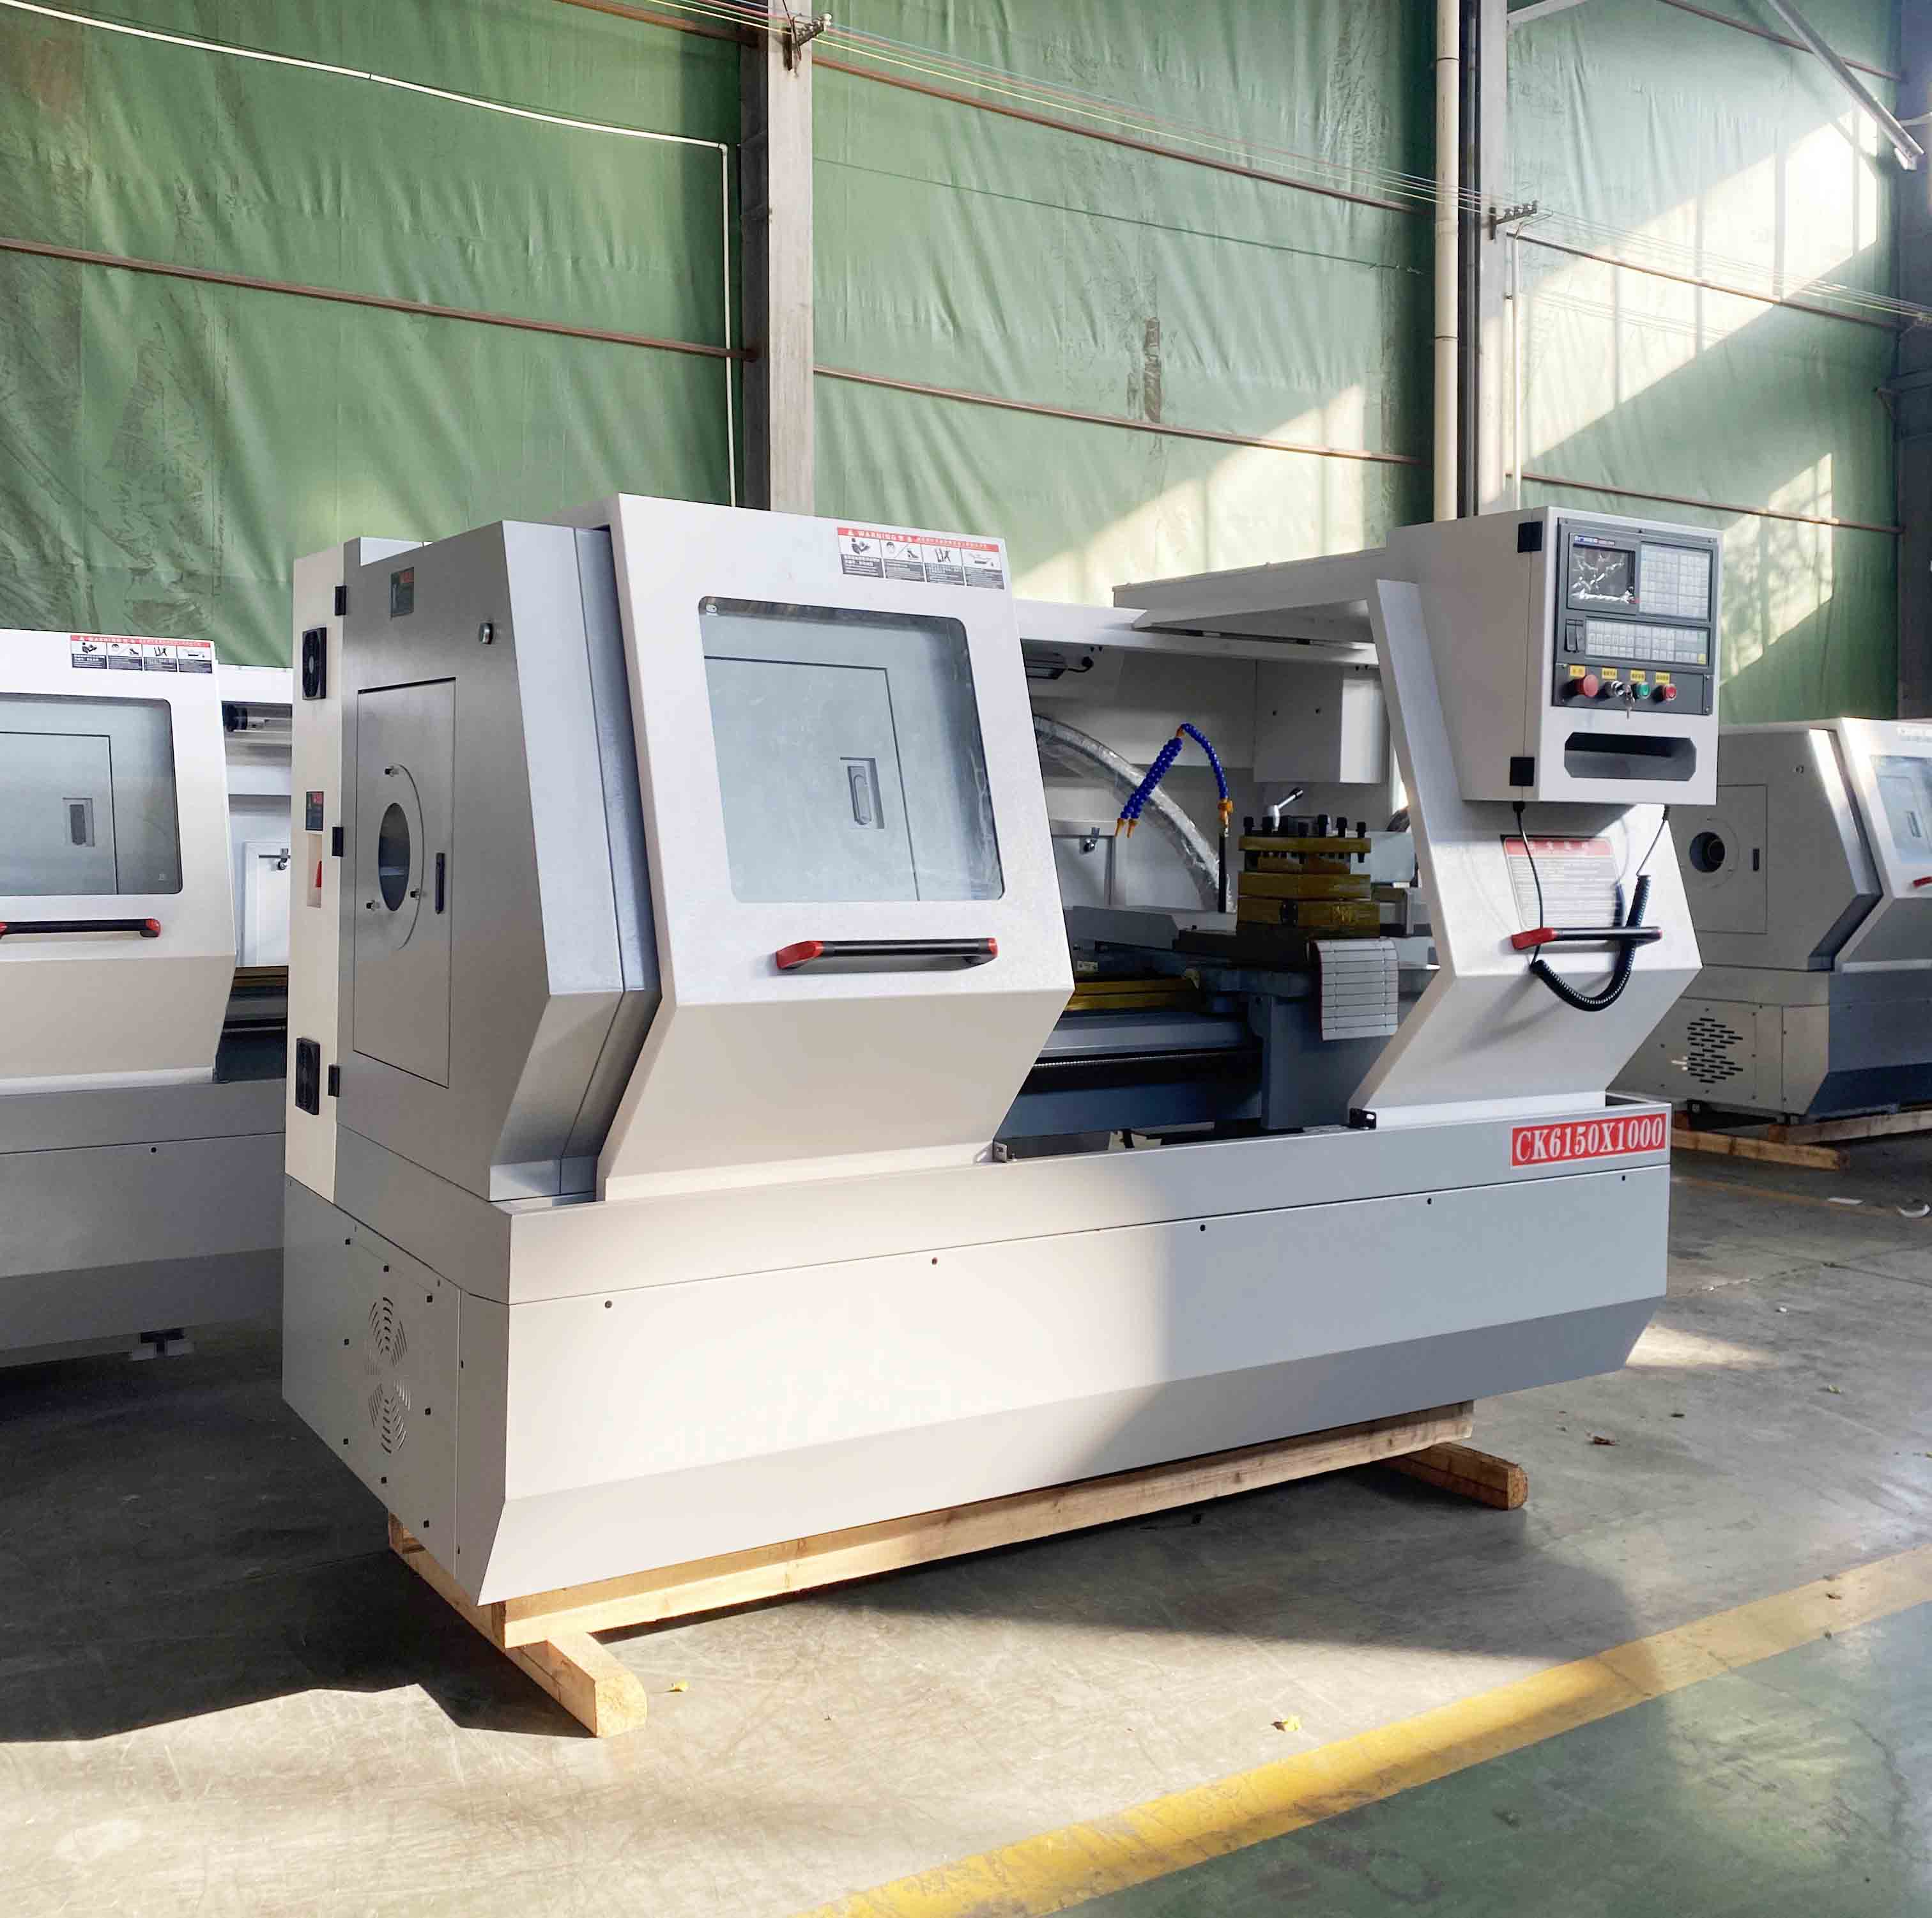 El Torno CNC ALCK6150X1000 Se Utiliza En La Industria De Procesamiento De Metales